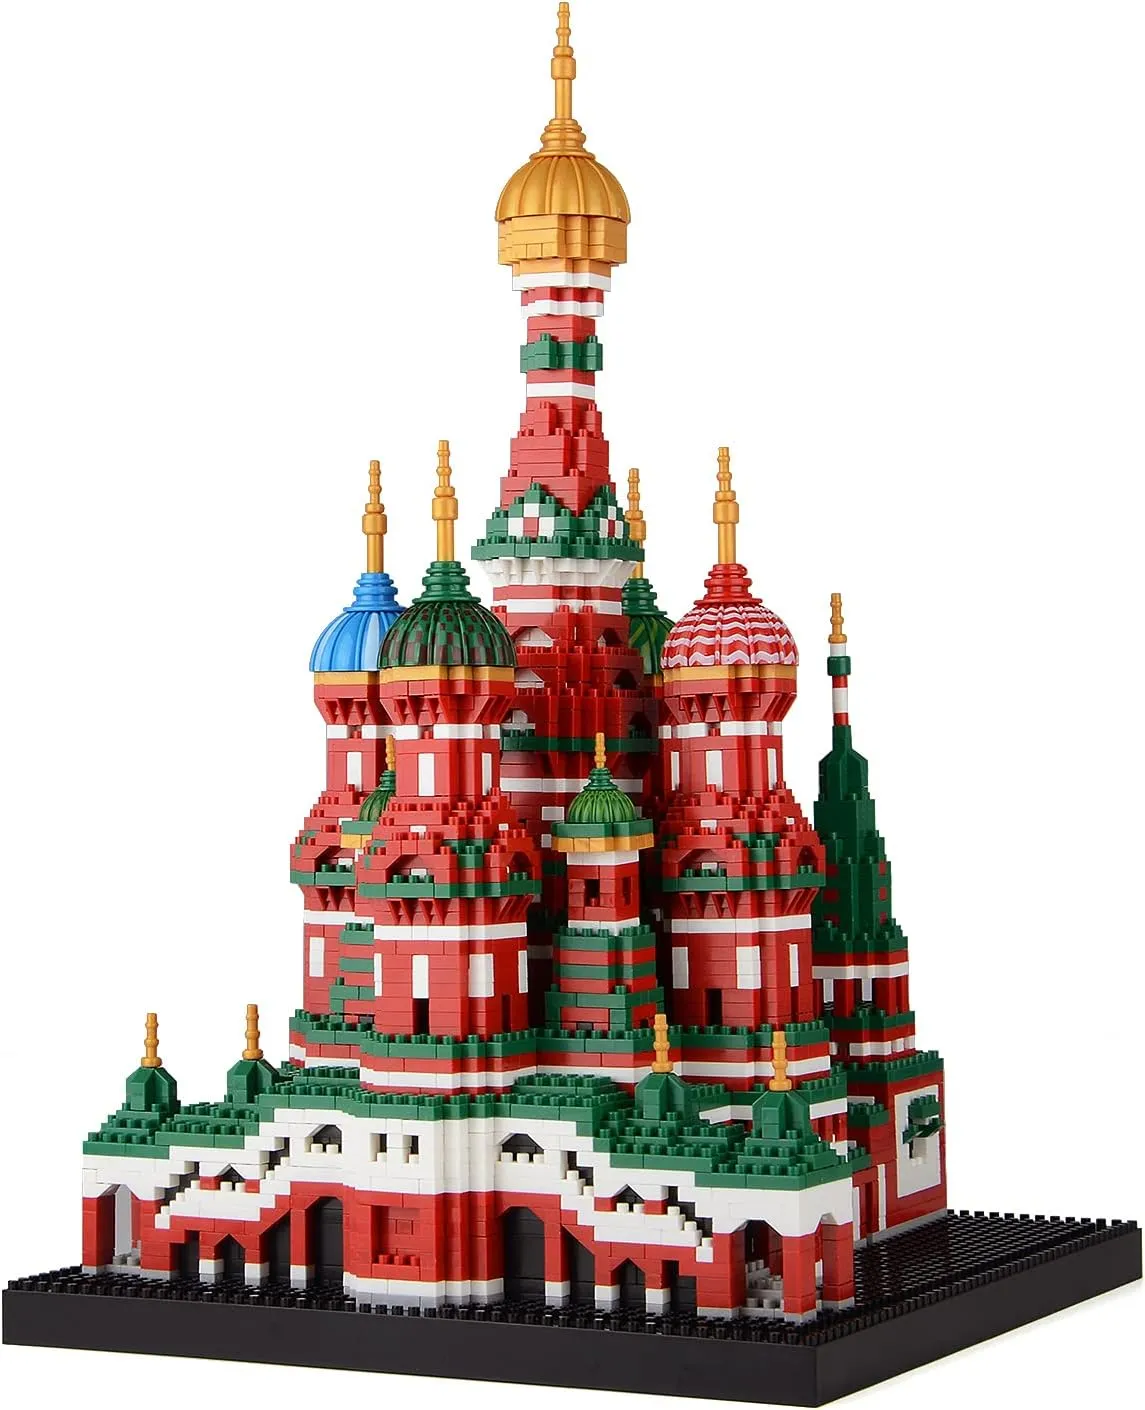 Cathédrale Saint-Basile, ensemble de blocs de construction de renommée mondiale, jouets éducatifs, cadeaux pour adultes et enfants (4 300 pièces)